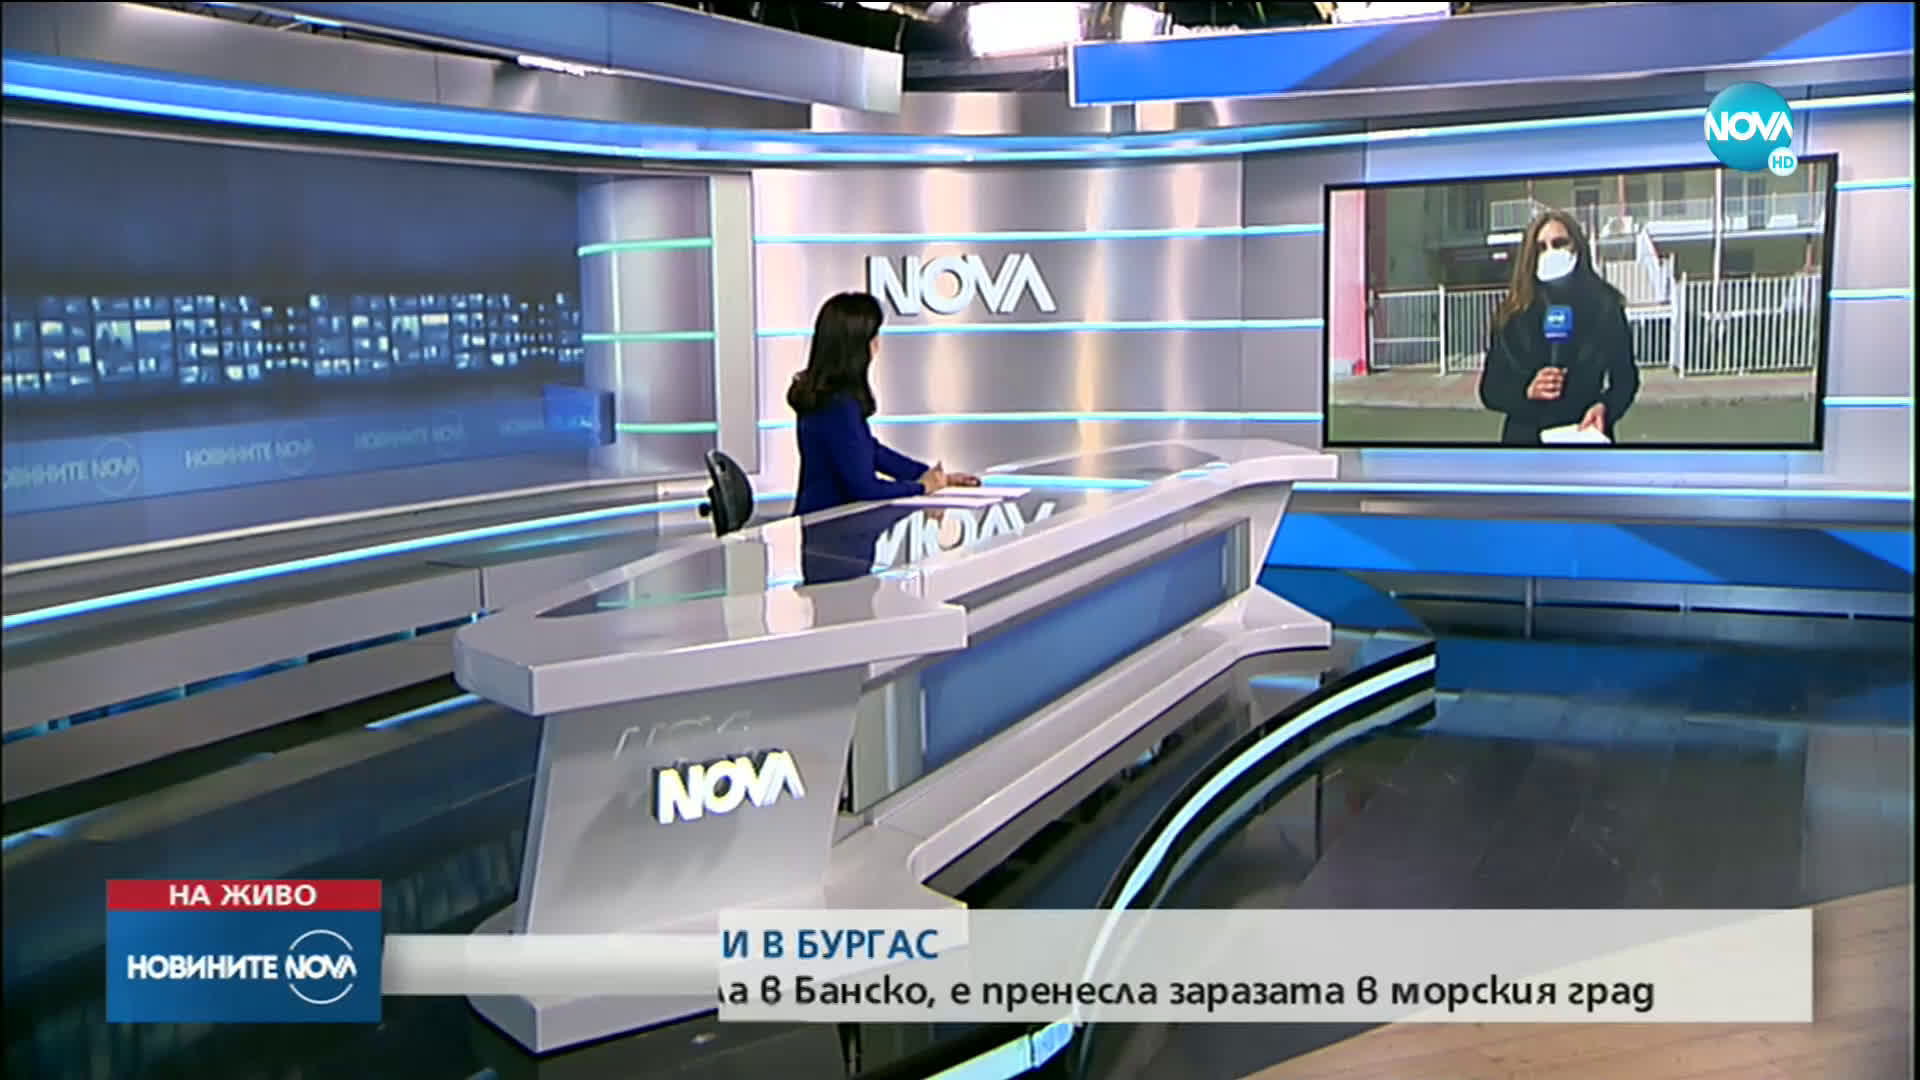 Новините на NOVA (19.03.2020 - обедна емисия)